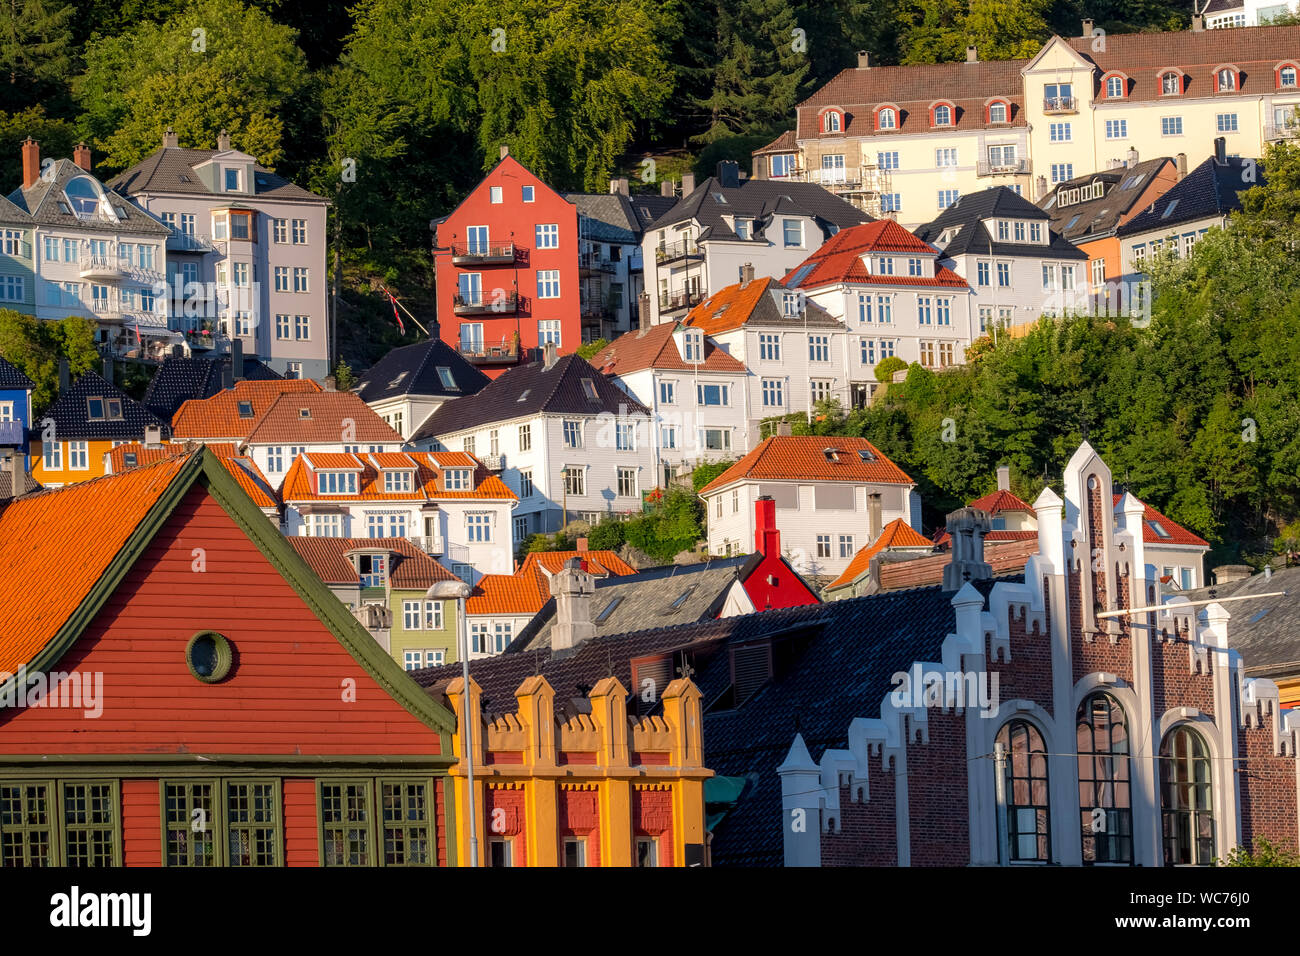 Bunte Häuser der Stadt Bergen, in der Nähe von Hafen, Bäumen, Bergen, Hordaland, Norwegen, Skandinavien, Europa, noch, Reisen, Tourismus, Destination, sightseein Stockfoto